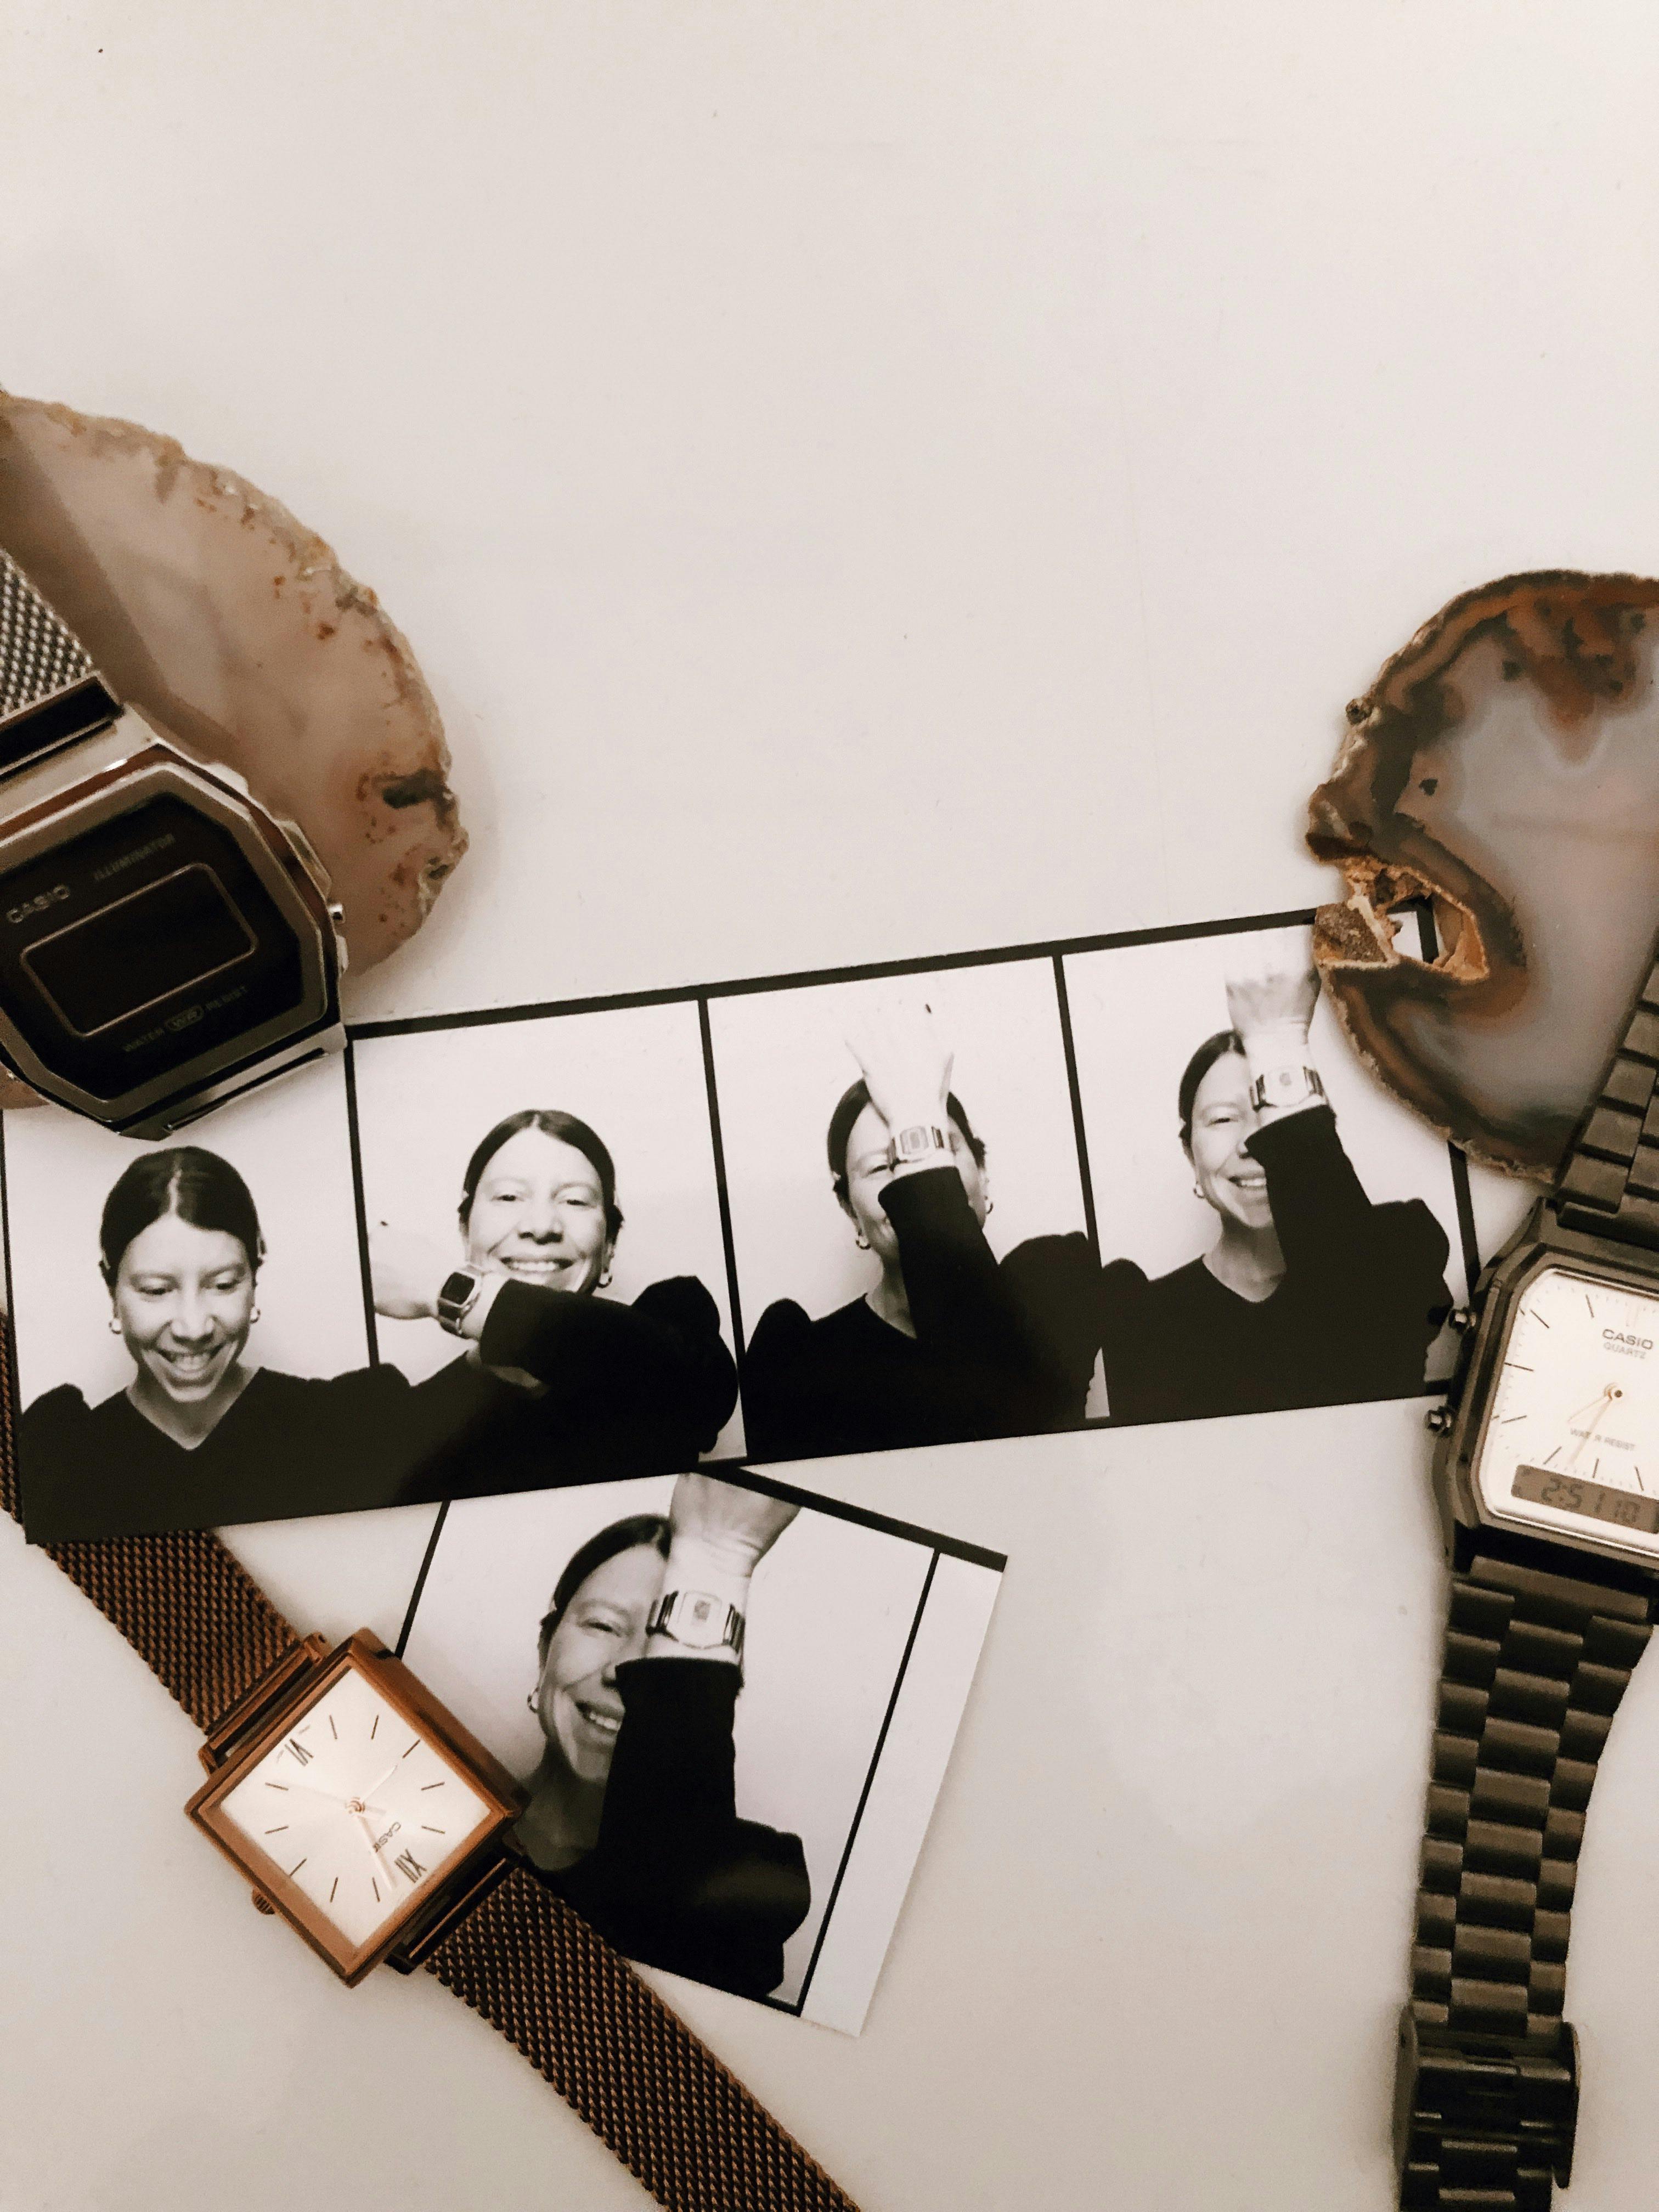 Alte Liebe rostet nicht: Wie ich mit den Uhren von Casio erwachsen wurde